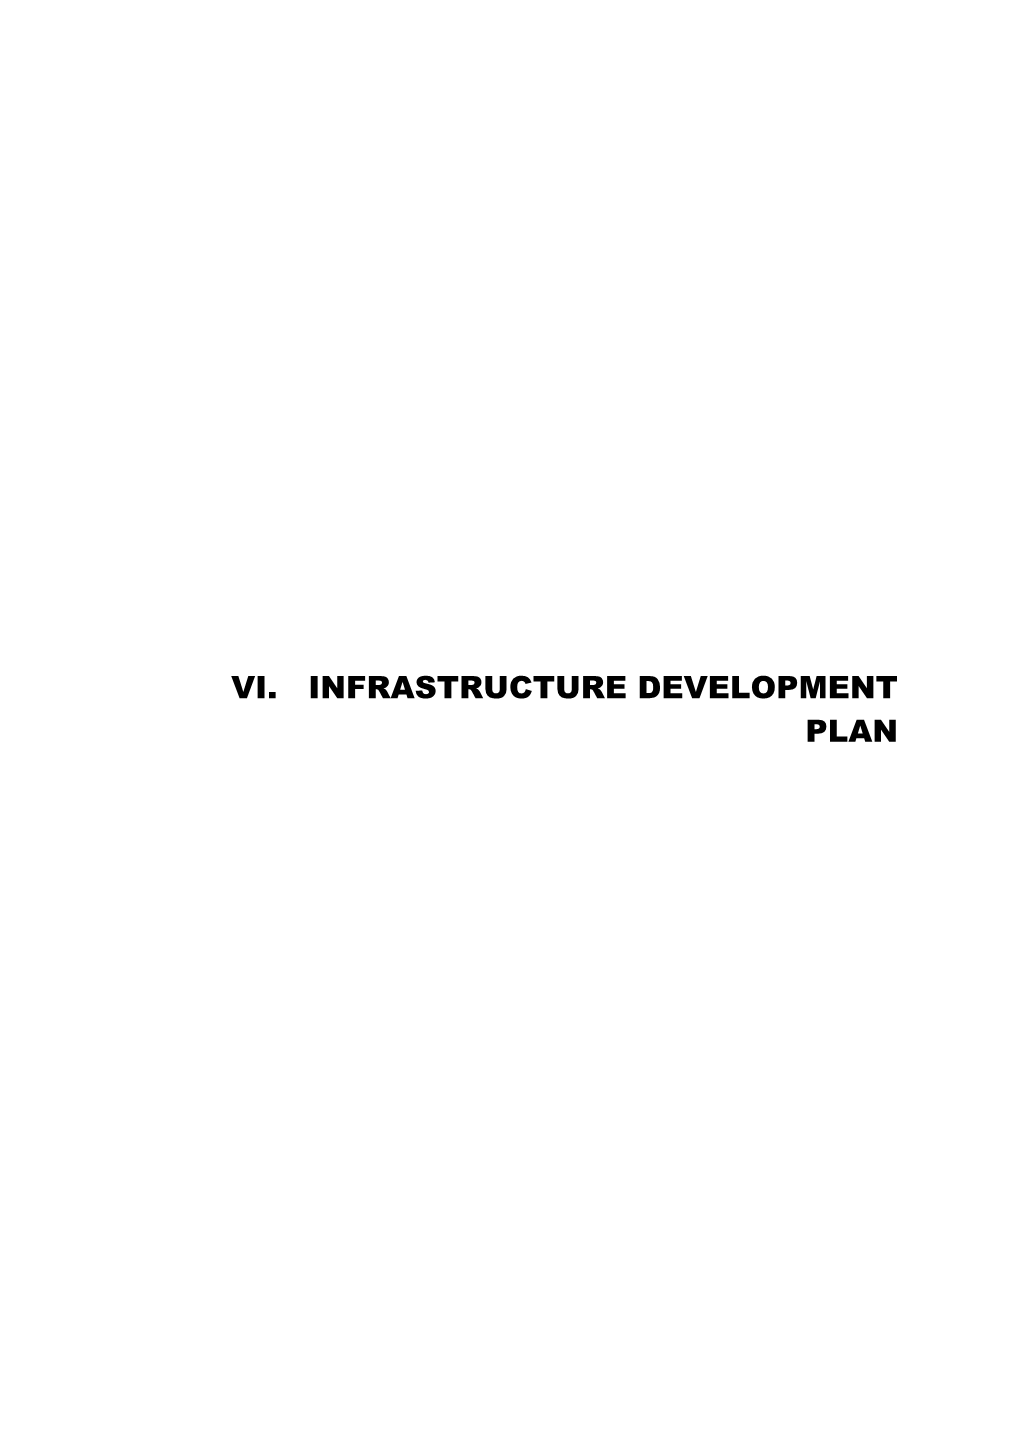 Vi. Infrastructure Development Plan